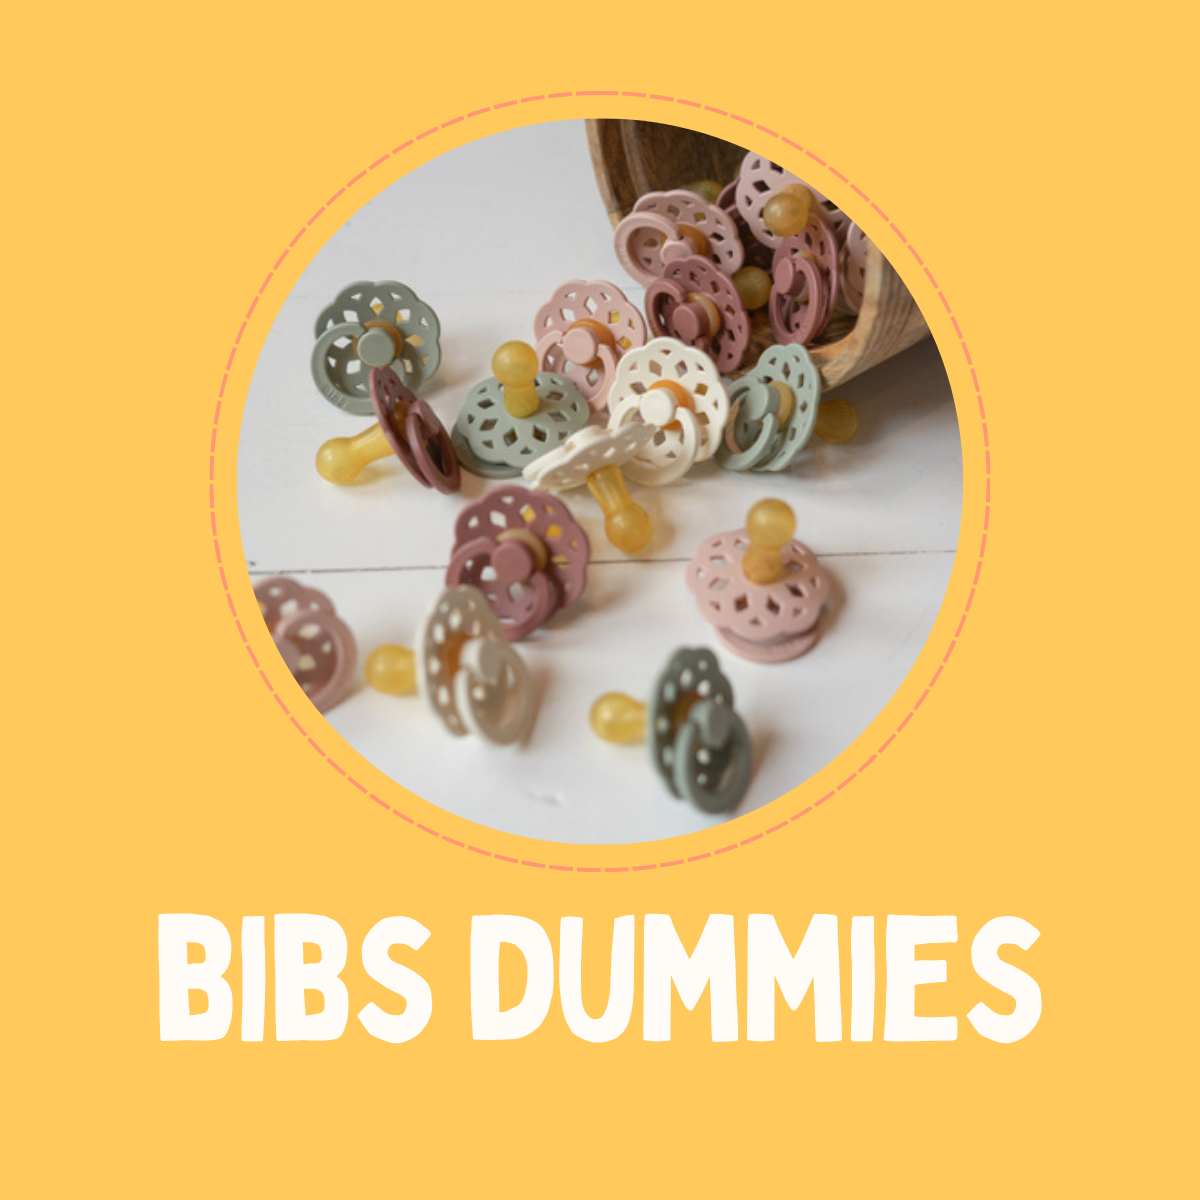 BIBs Dummies - All